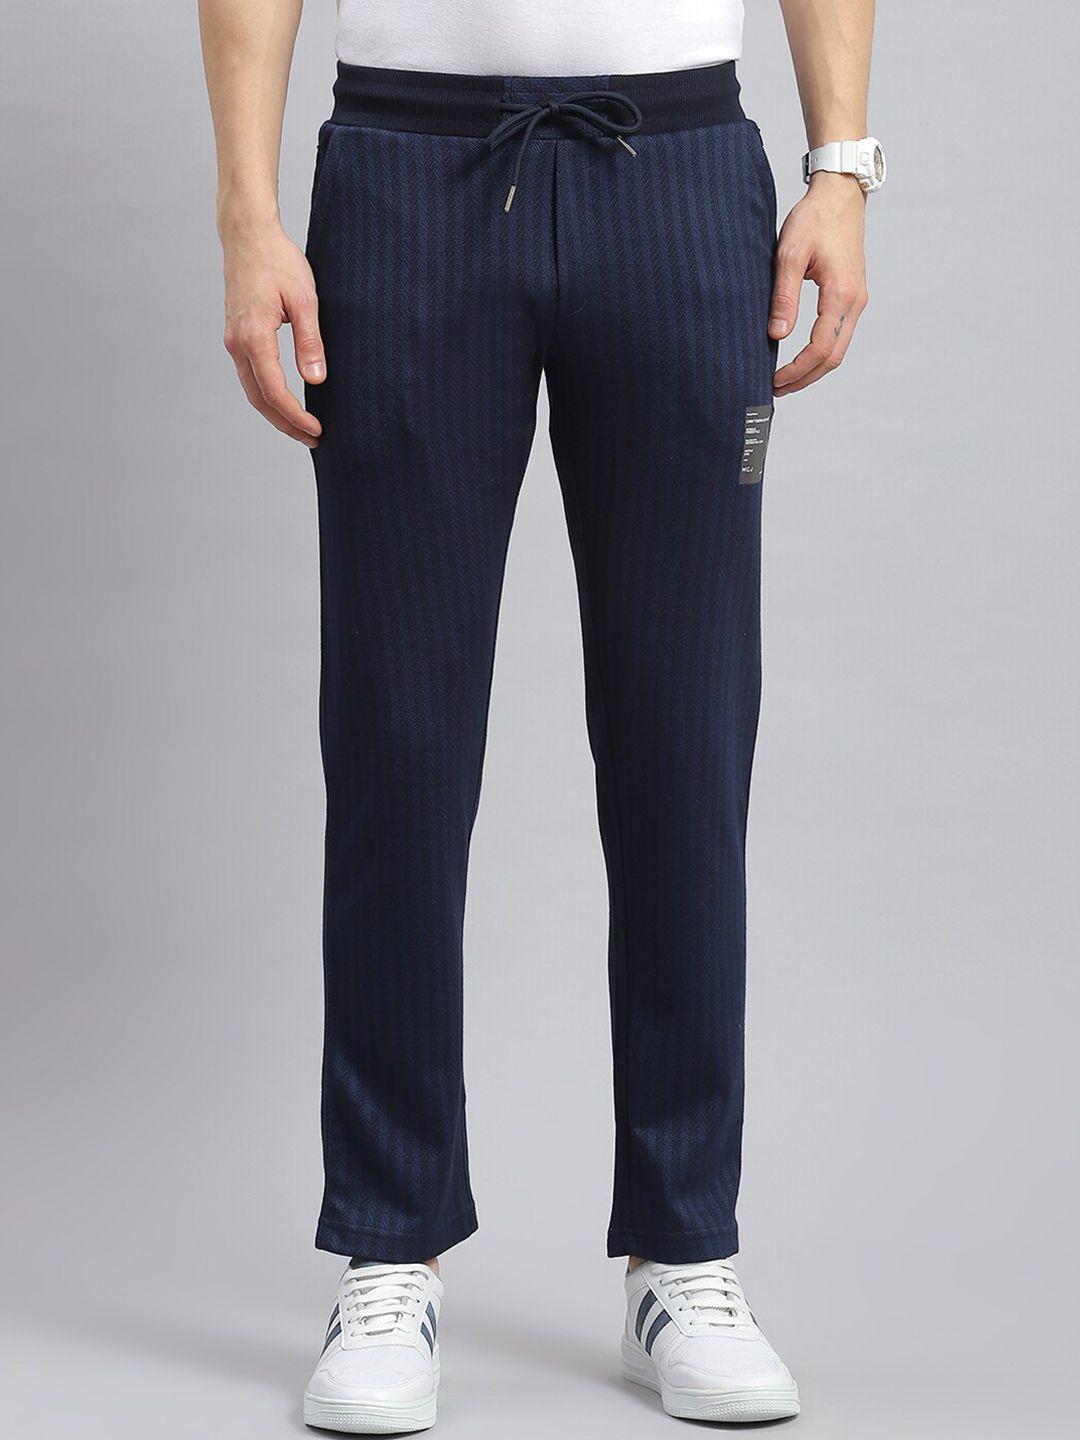 monte-carlo-men-striped-cotton-track-pants